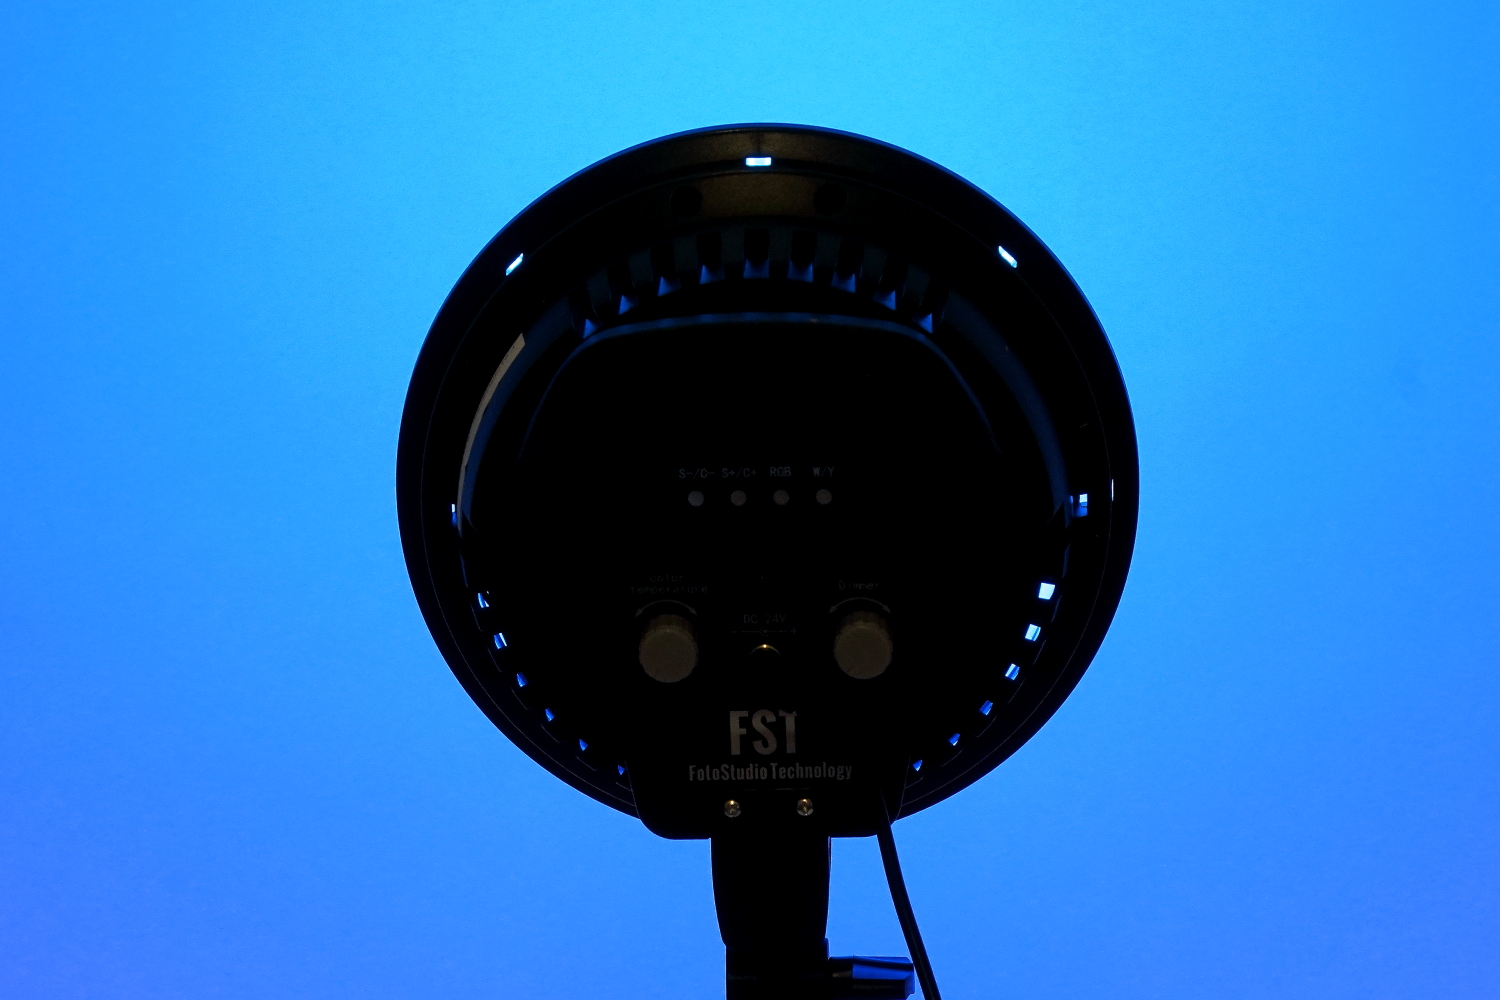    FST LED-1682RGB Kit